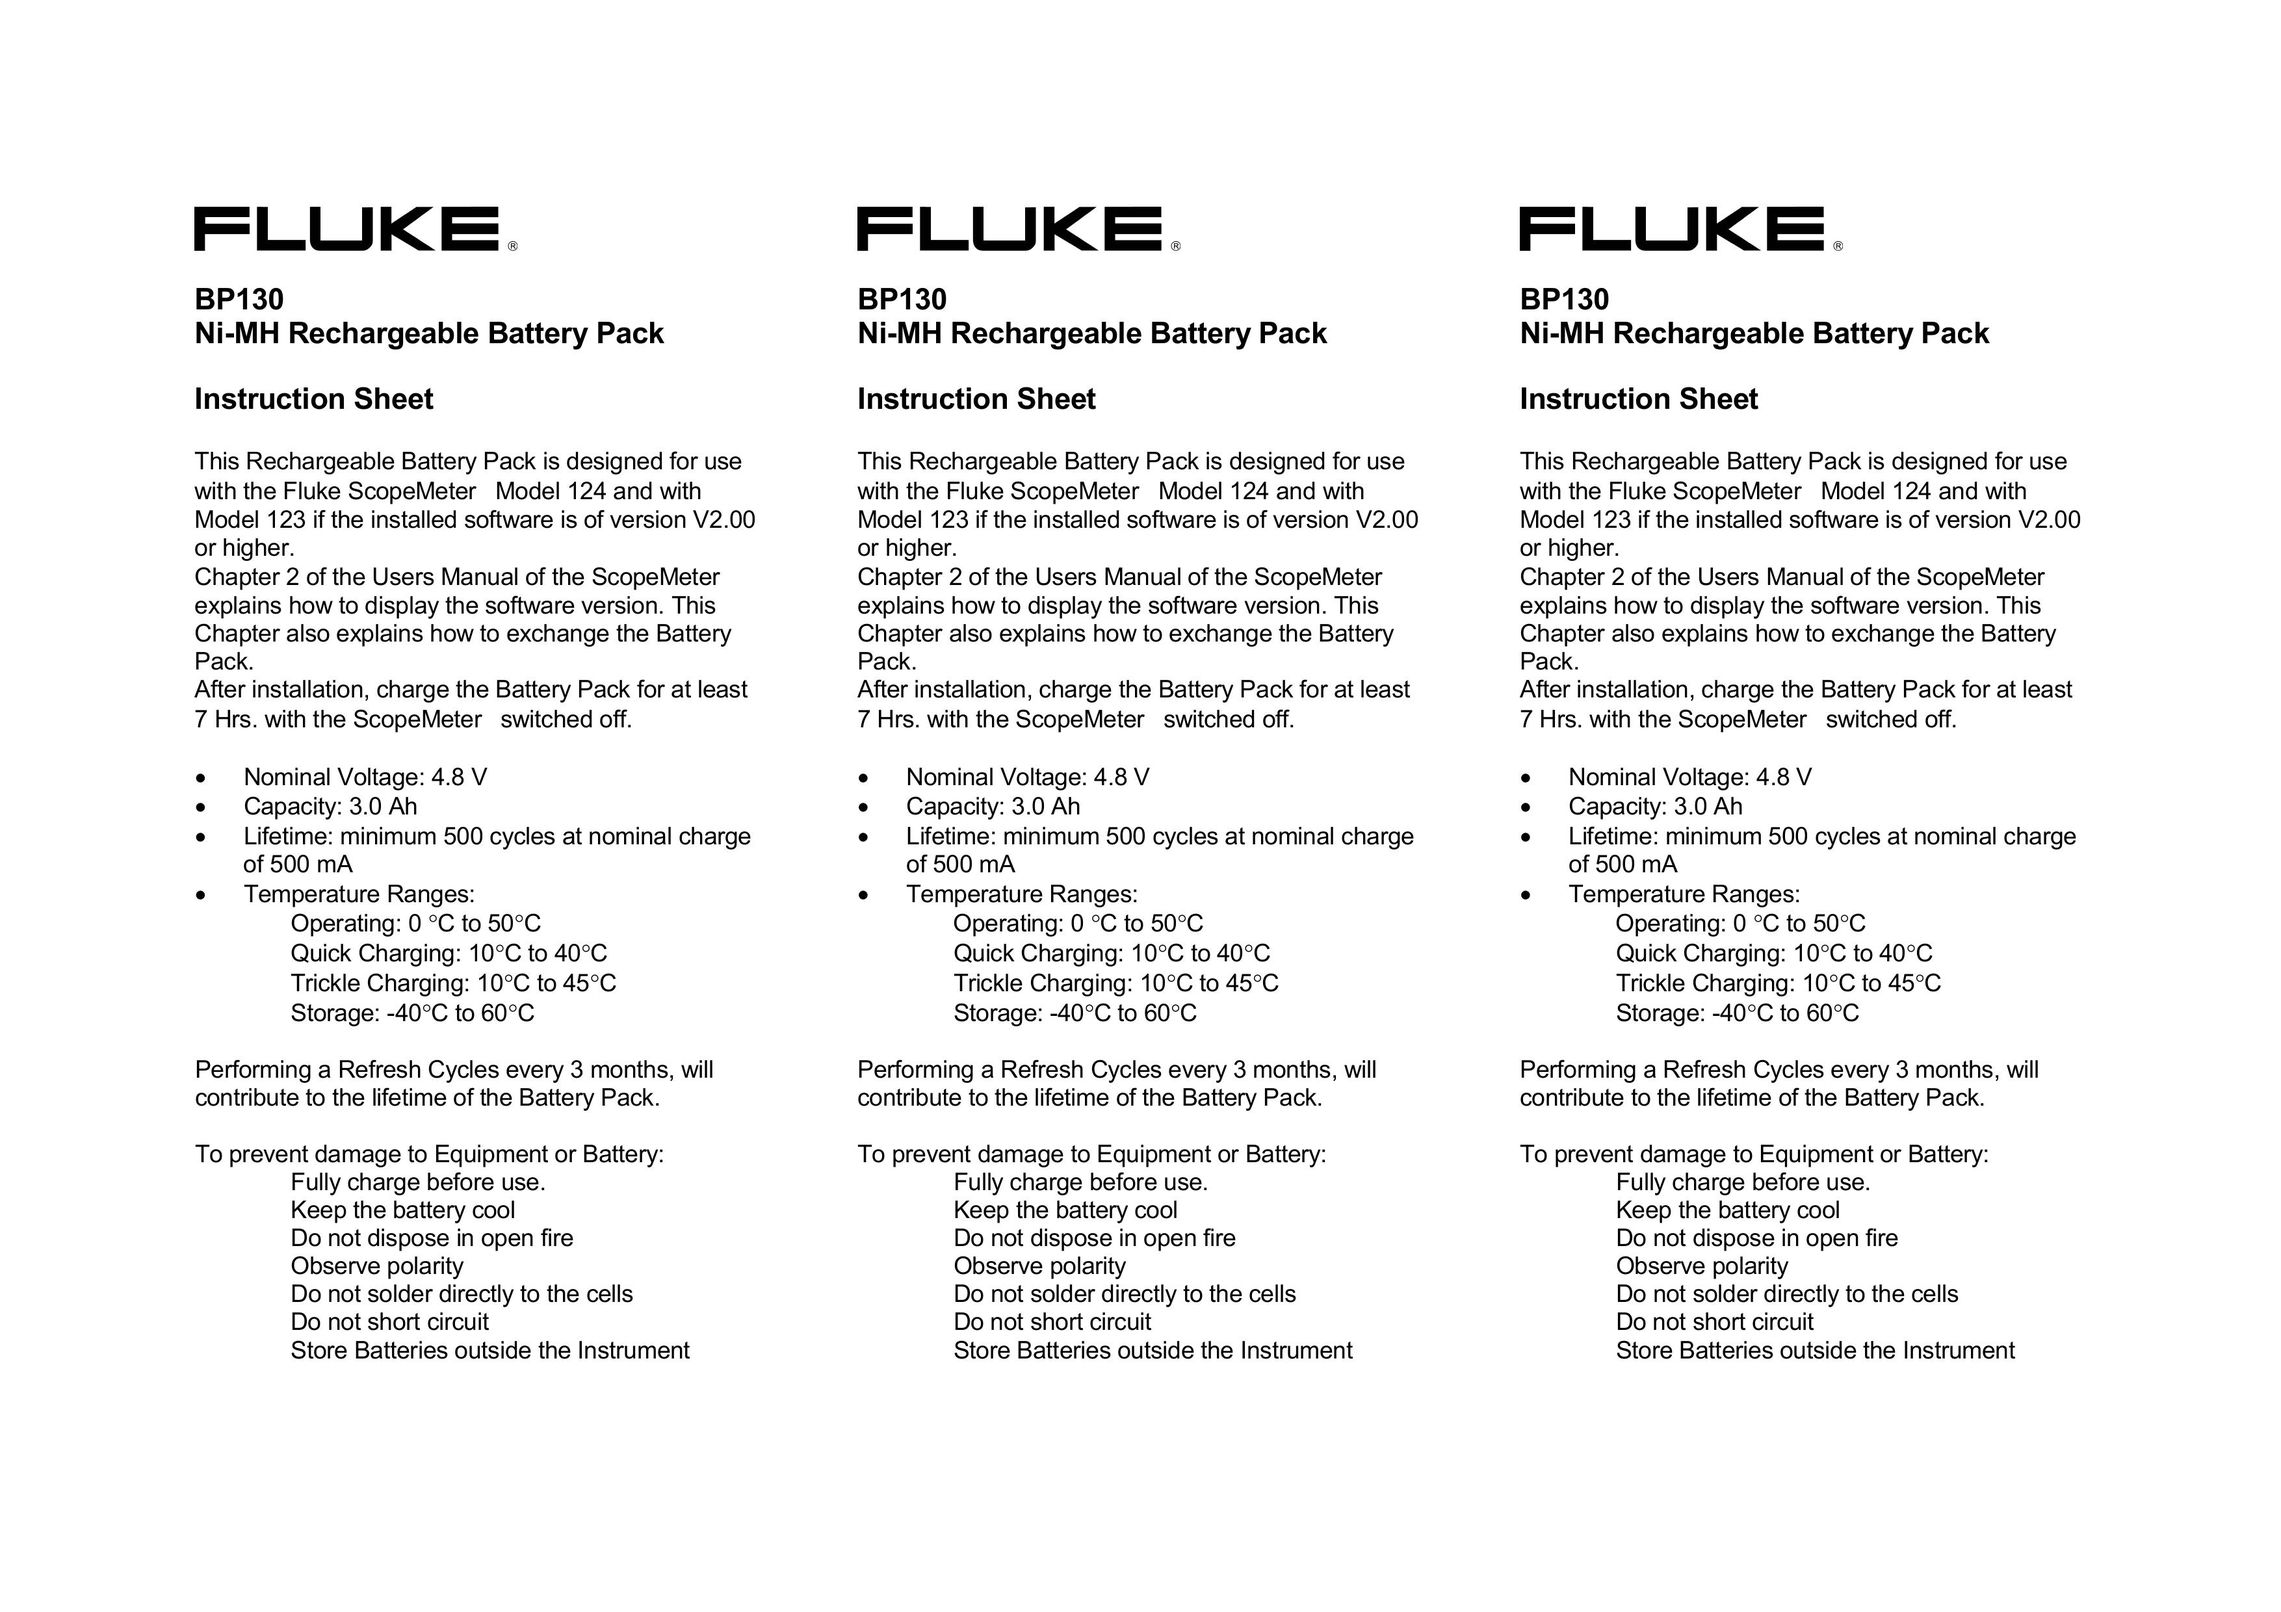 Fluke BP130 Battery Charger User Manual